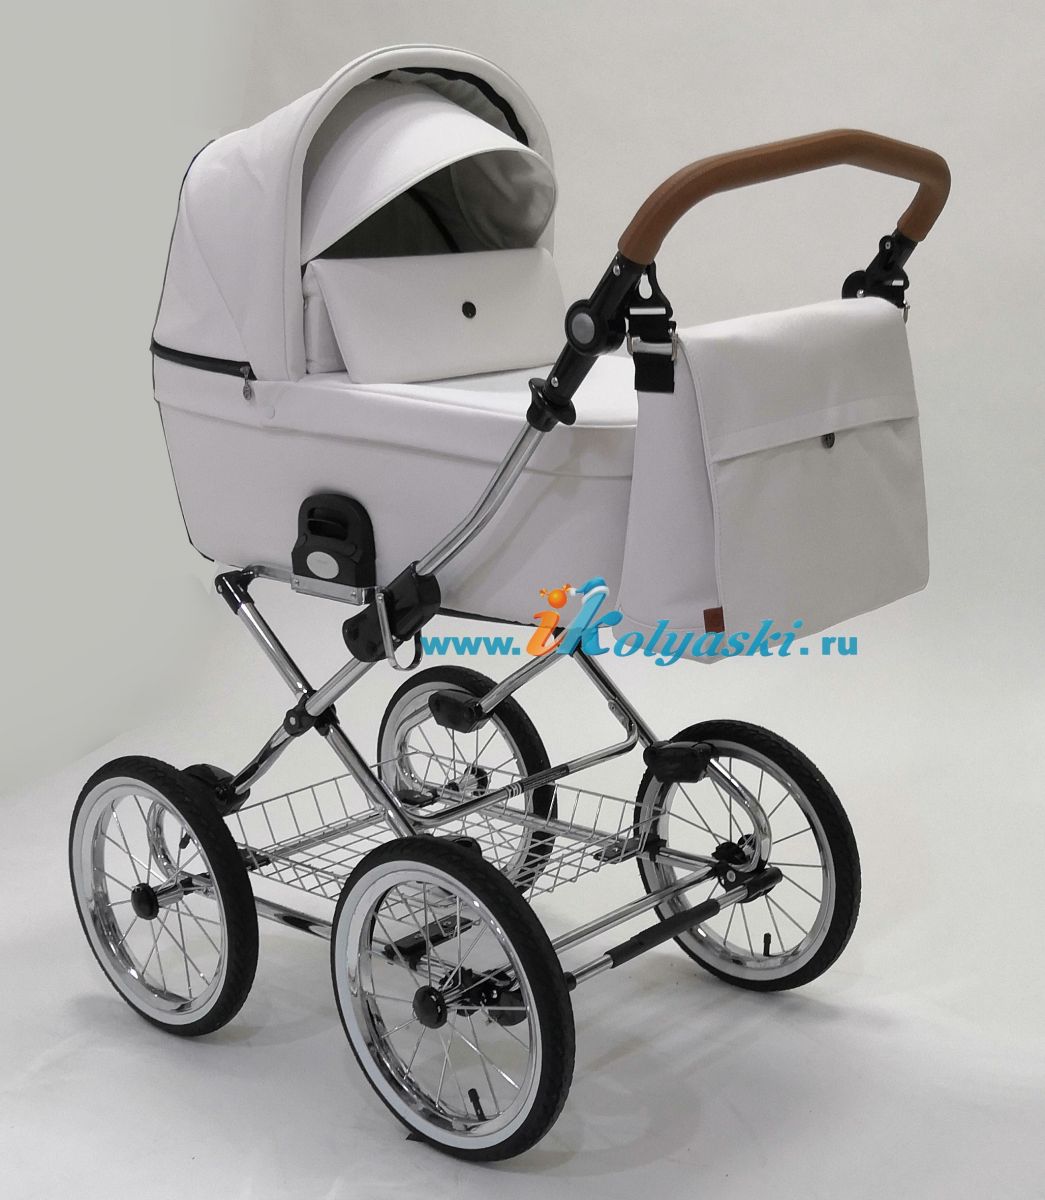 Roan Coss Classic коляска для новорожденных 3 в 1 на больших колесах новые цвета 2020 - купить в интернет-магазине Иколяски в Москве с доставкой по РФ - цвет Caramel White